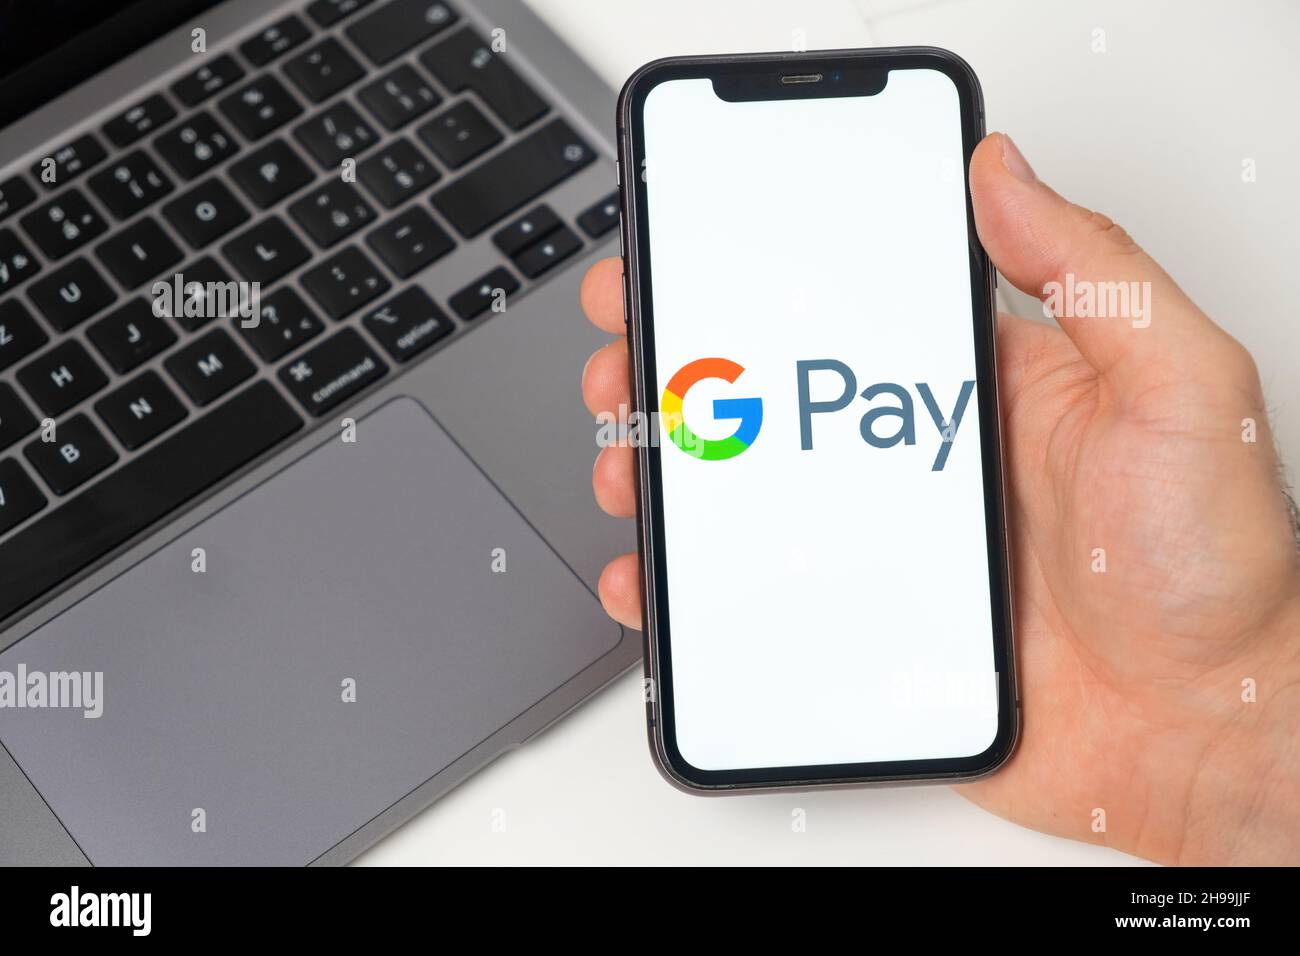 Le système de paiement Google permet de faire des transferts d'argent.Achats en ligne avec un smartphone et un ordinateur portable.Un moyen rapide, sécurisé et social de payer et de recevoir de l'argent.Arrière-plan blanc.Novembre 2021, San Francisco, États-Unis Banque D'Images